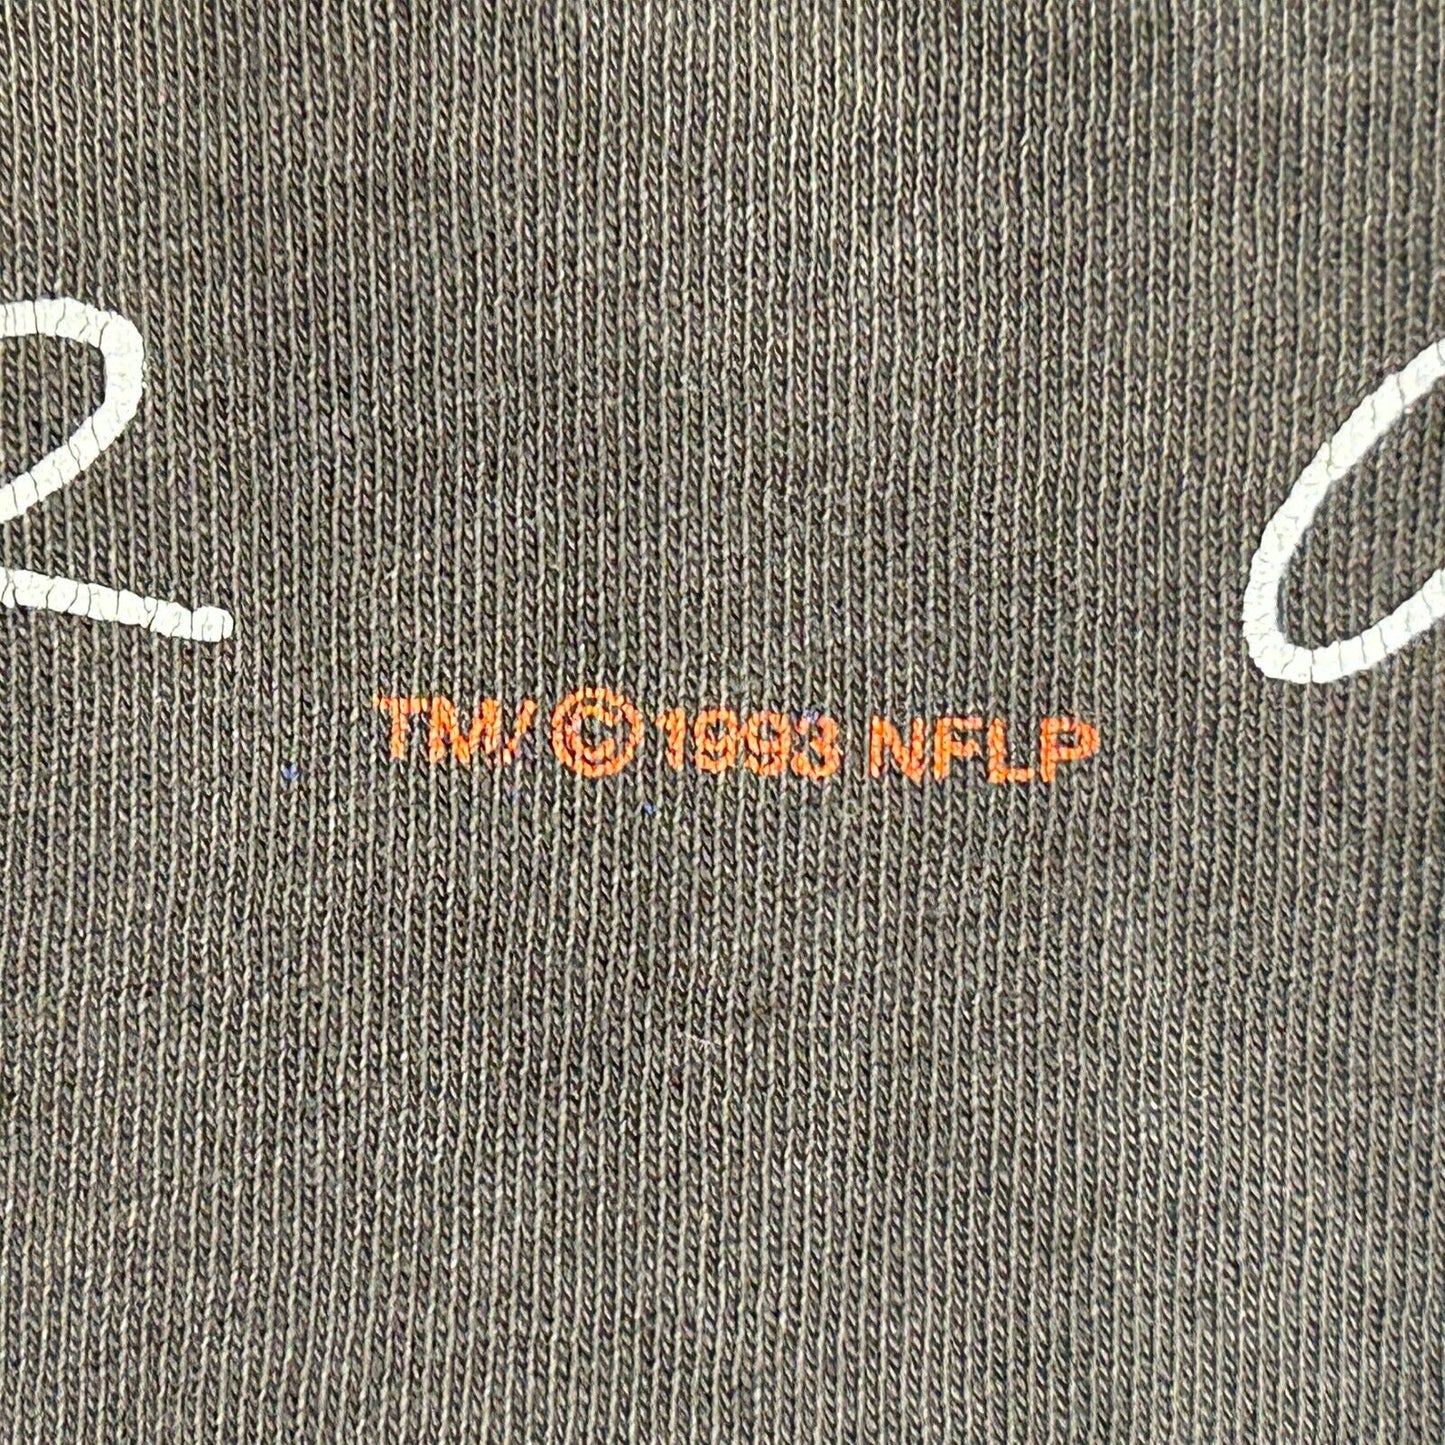 Angustiado Denver Broncos Vintage 90s sudadera con capucha camiseta NFL fútbol con capucha EE.UU. XL